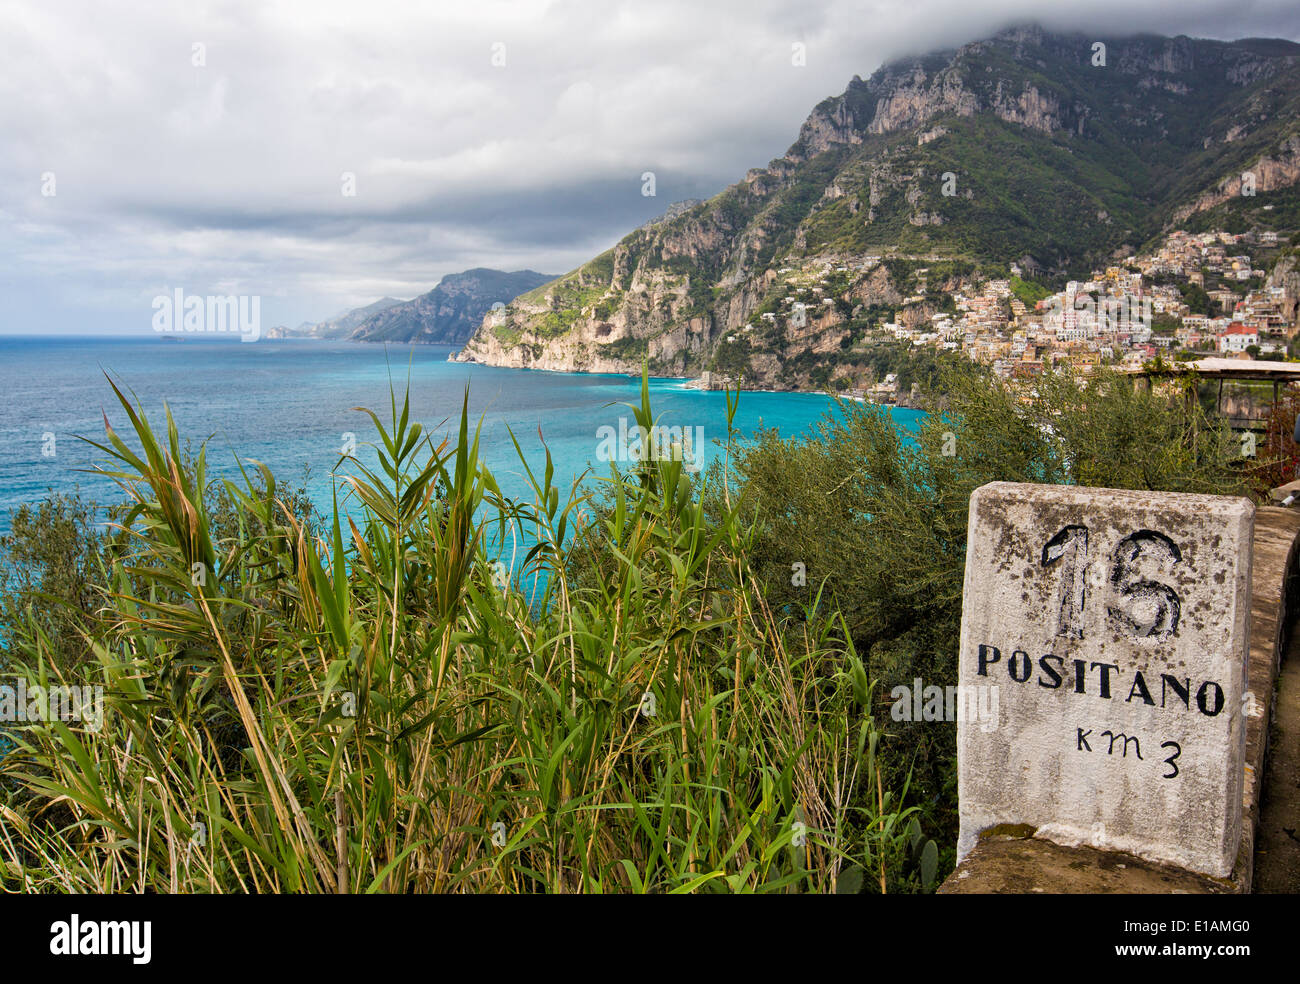 Marcador de distancia en una carretera en Costa de Amalfi, Positano, Campania, Italia Foto de stock